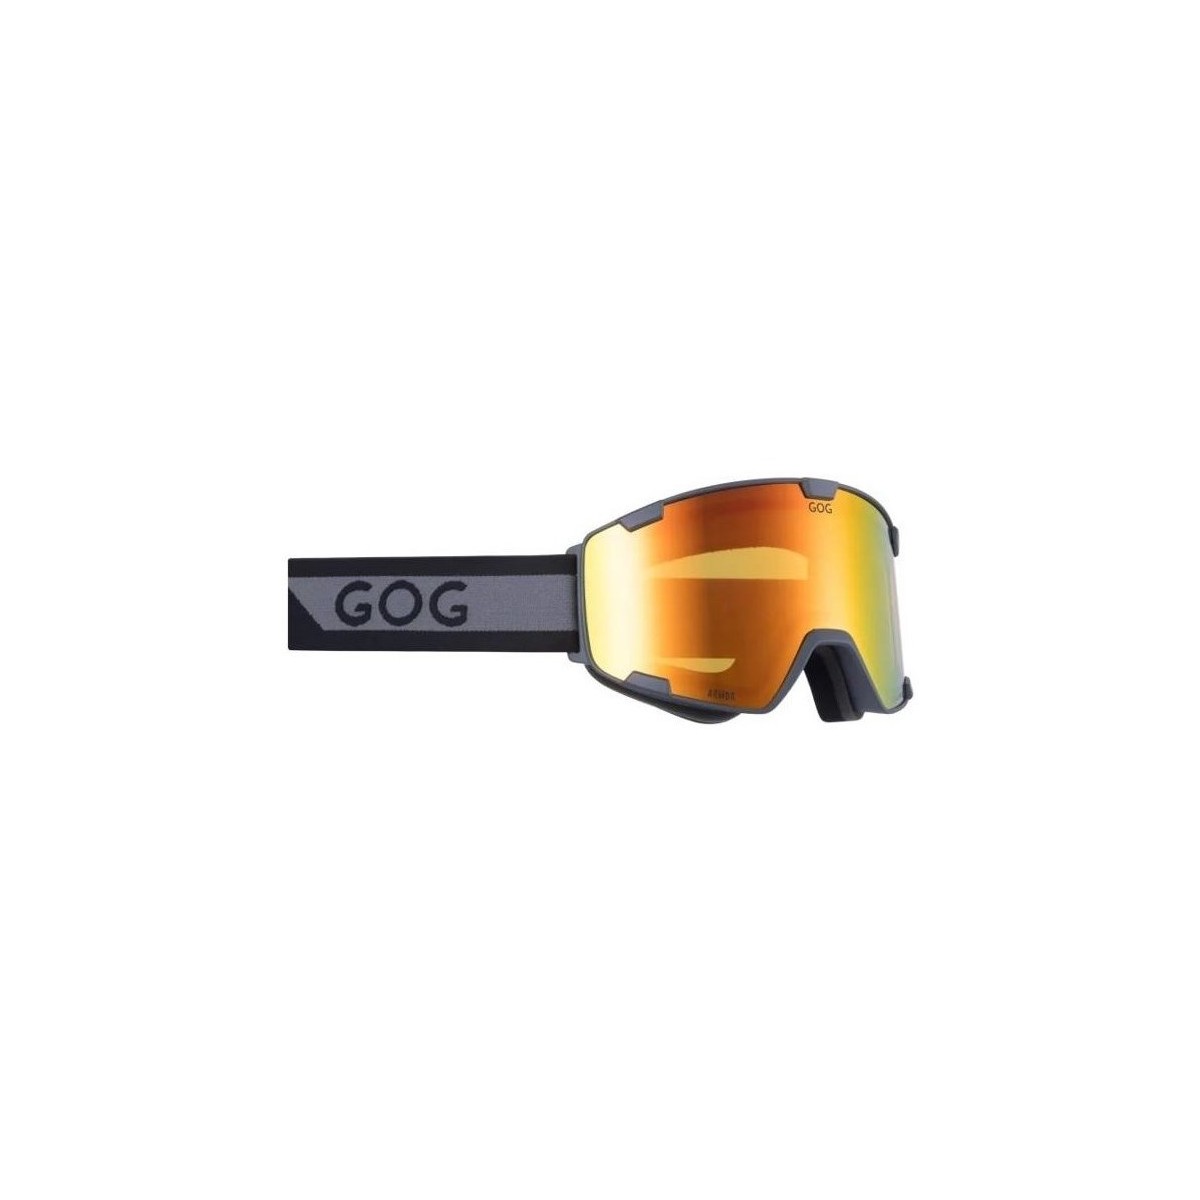 Accesorii Accesorii sport Goggle Armor Negre, Portocalie, Gri